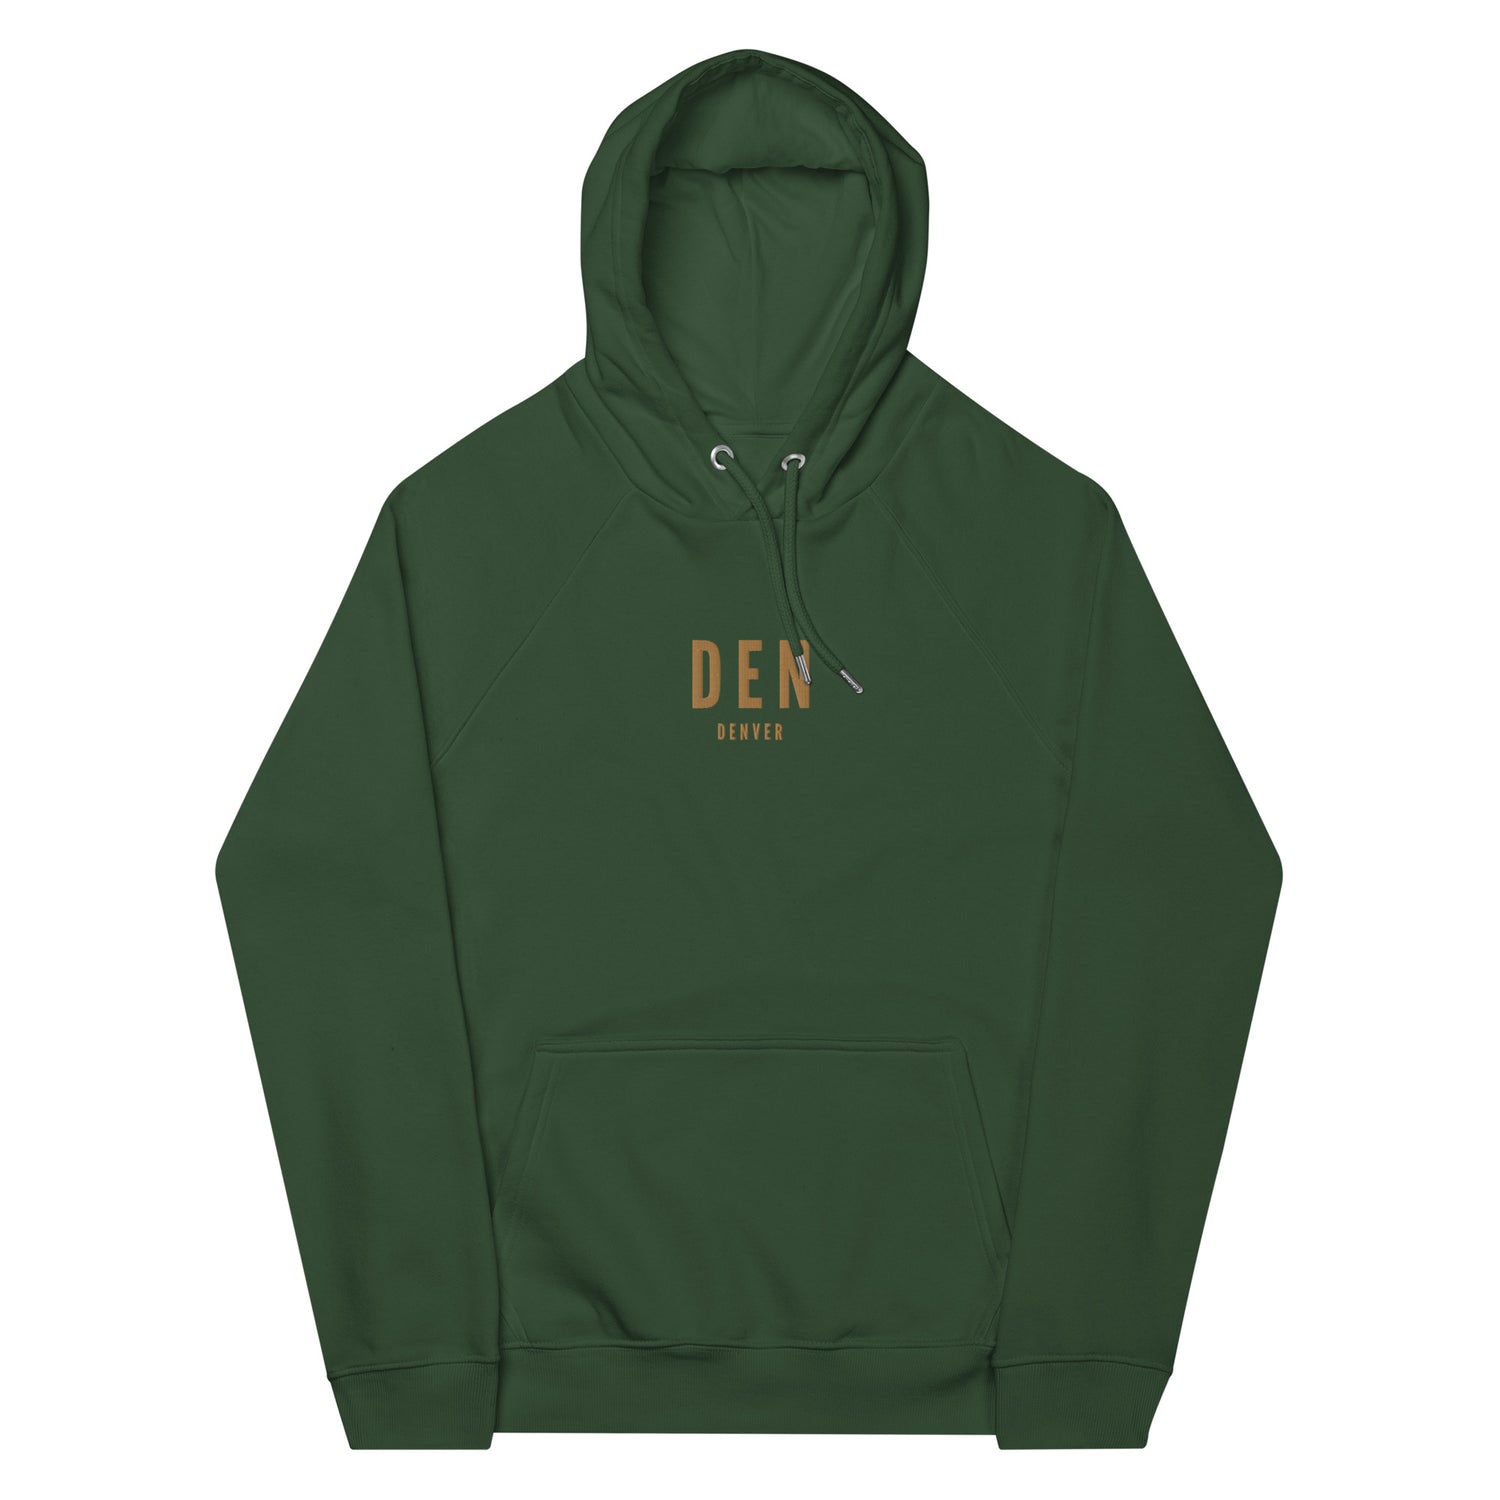 Denver Colorado Hoodies and Sweatshirts • DEN Airport Code